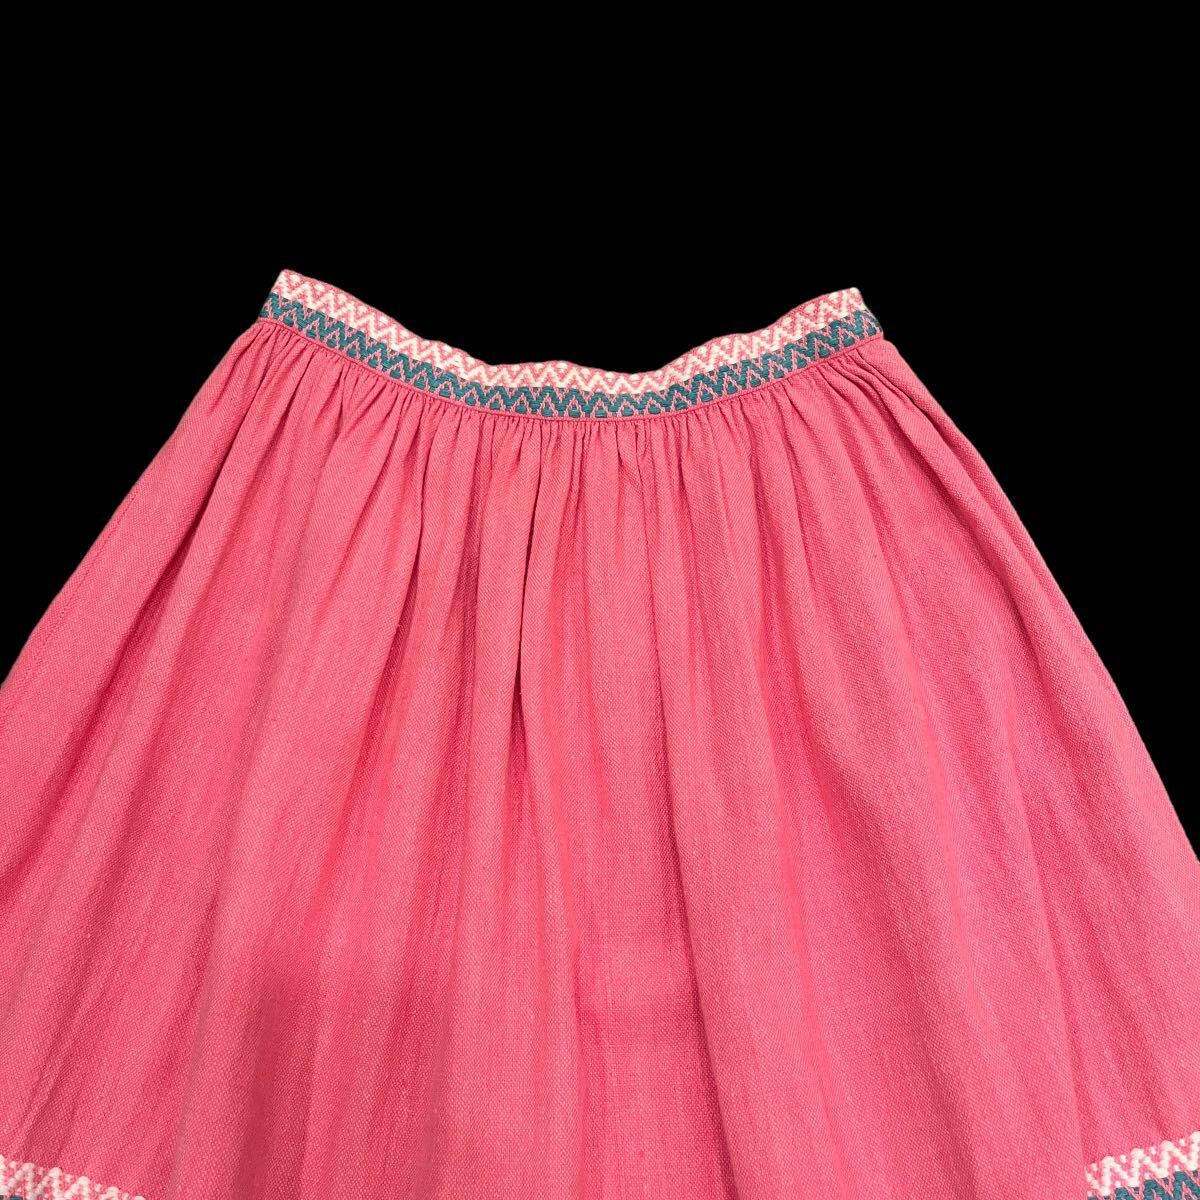 ビンテージ 50’s 60’s 刺繍 スカート ピンク 古着 フォークダンス 50年代 60年代の画像2